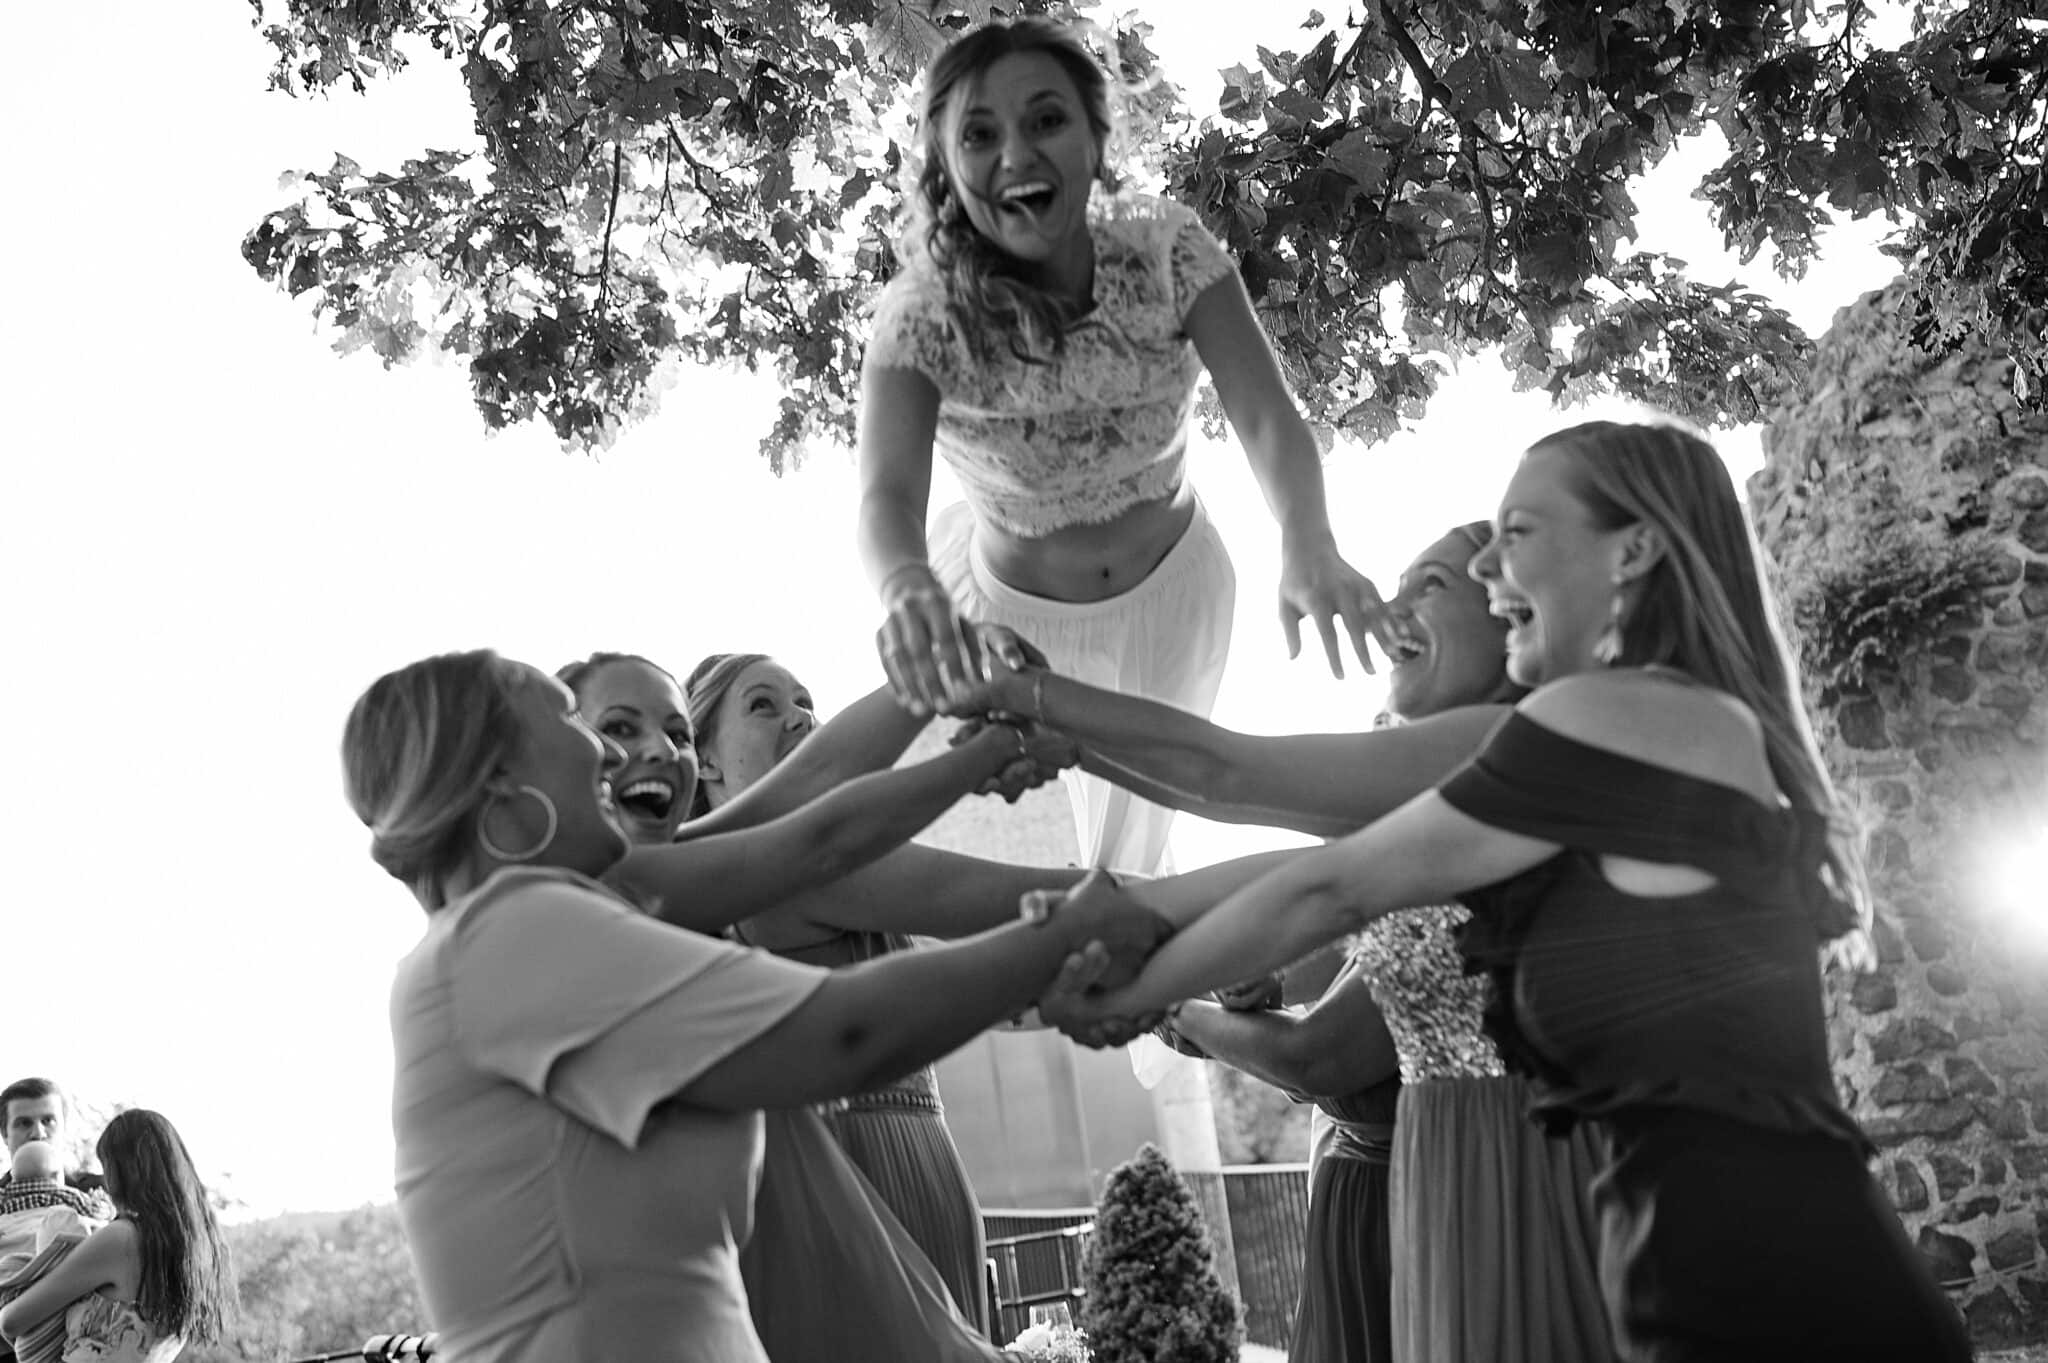 Eine Gruppe von Frauen hebt eine andere Frau in einer feierlichen Geste im Freien während Hochzeitsbildern in die Luft.